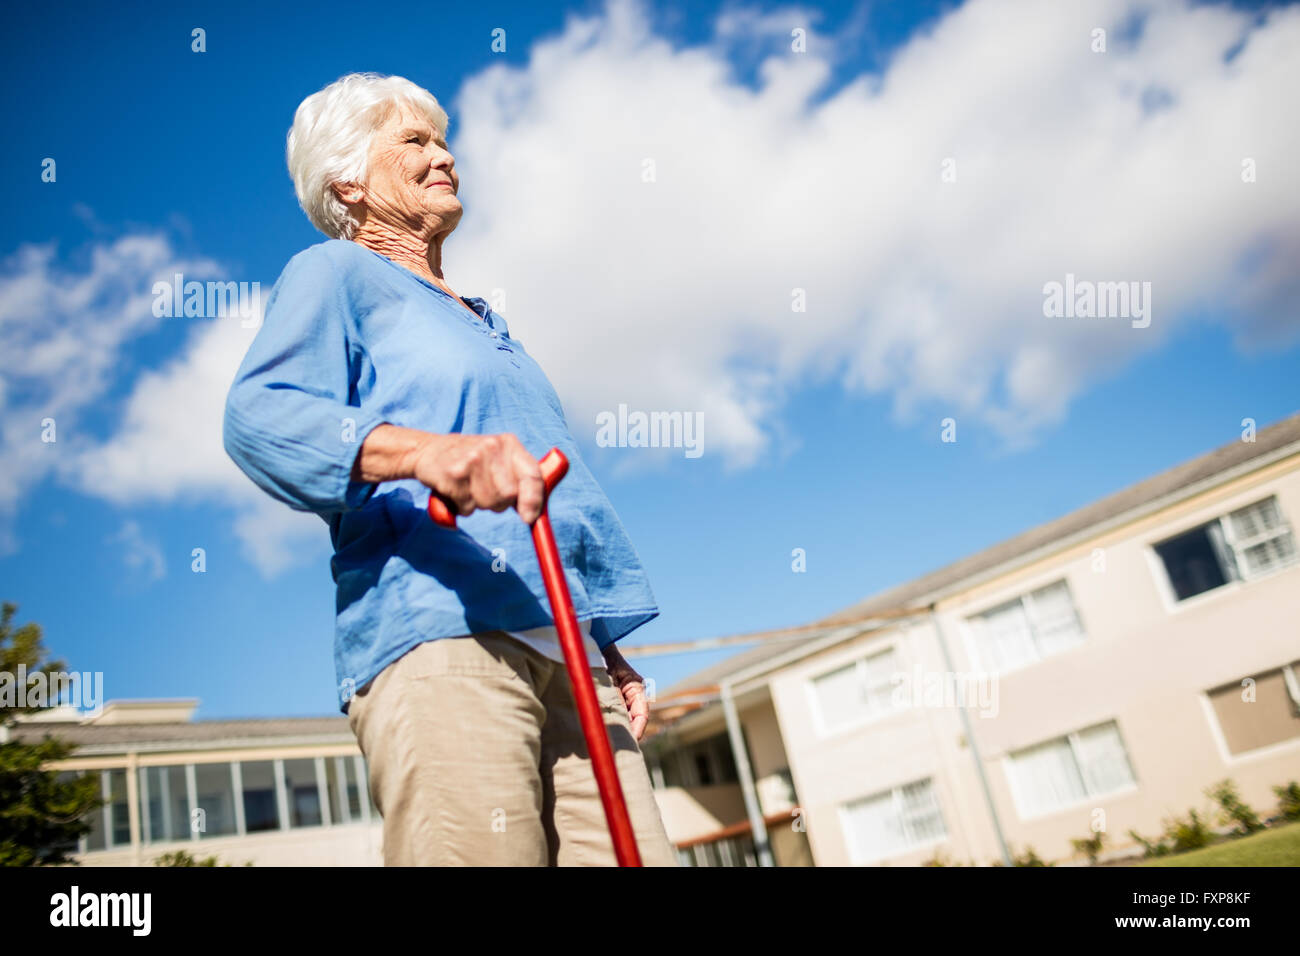 A senior woman walking avec son bâton de marche Banque D'Images